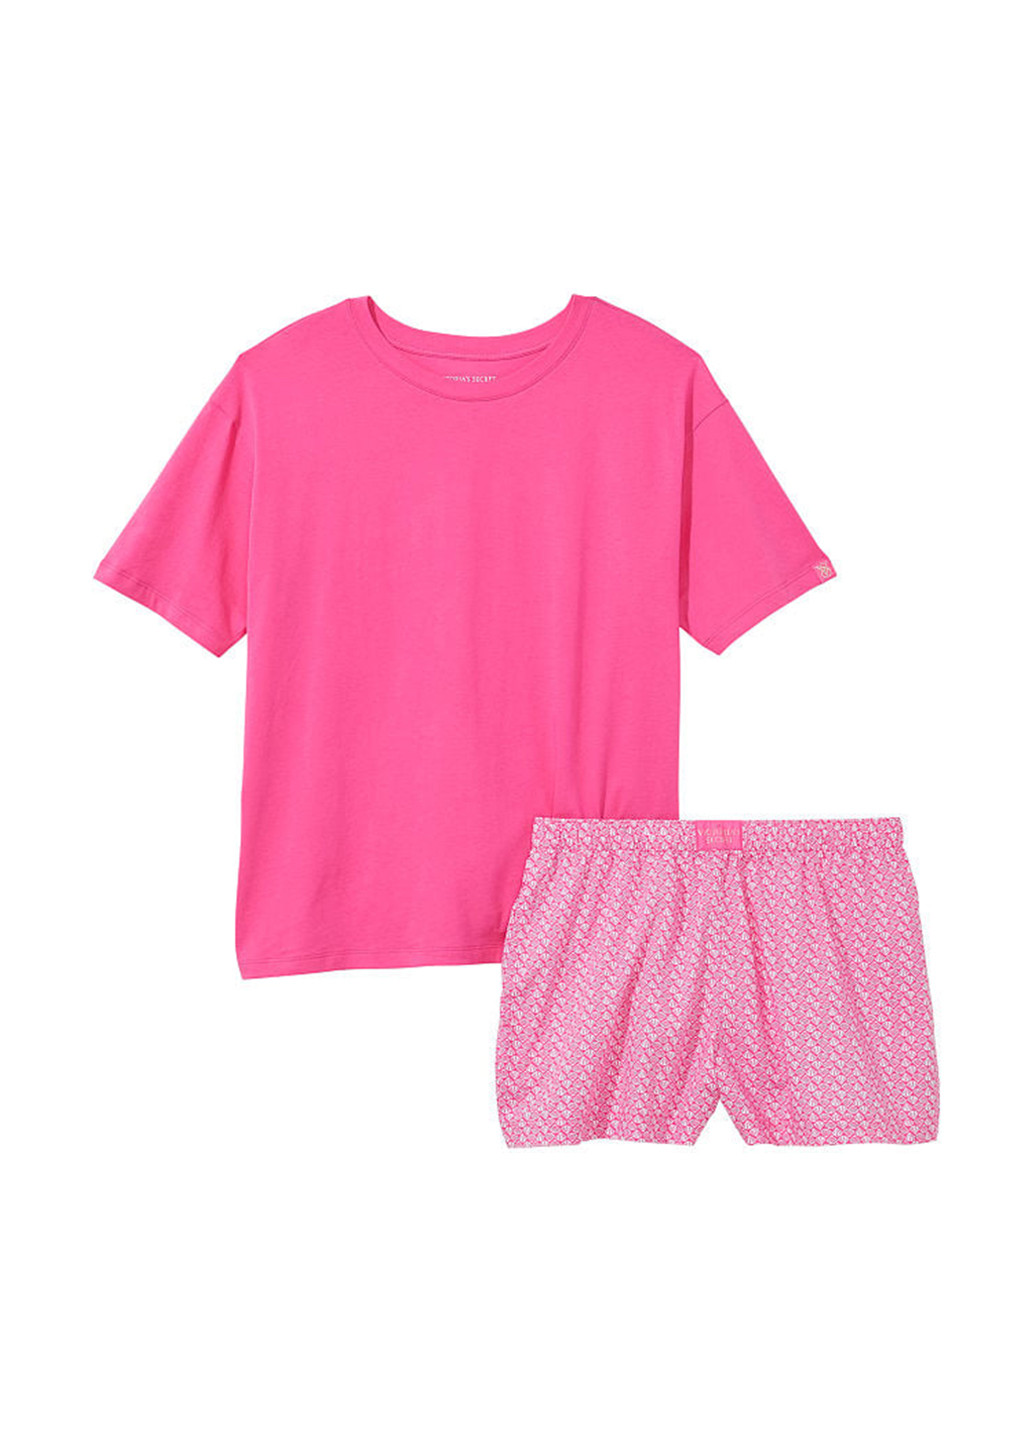 Розовая всесезон пижама (футболка, шорты) футболка + шорты Victoria's Secret